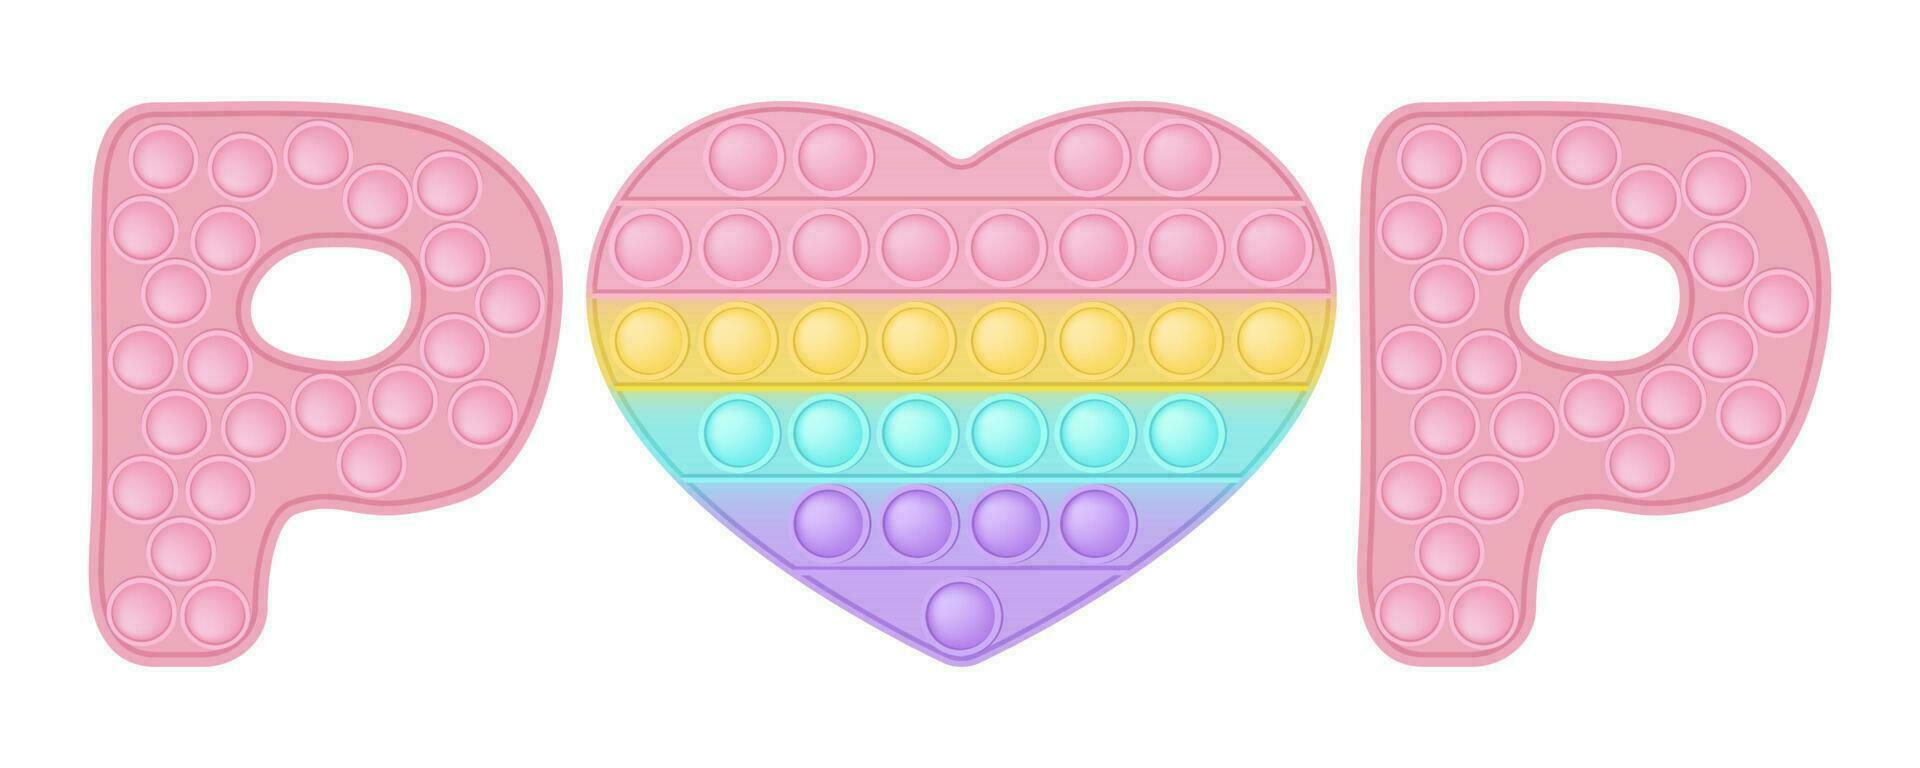 estalando brinquedo amor placa com coração ícone símbolo do dia dos namorados dia. a figura do coração é Rosa dentro cor. vetor bandeira em branco.